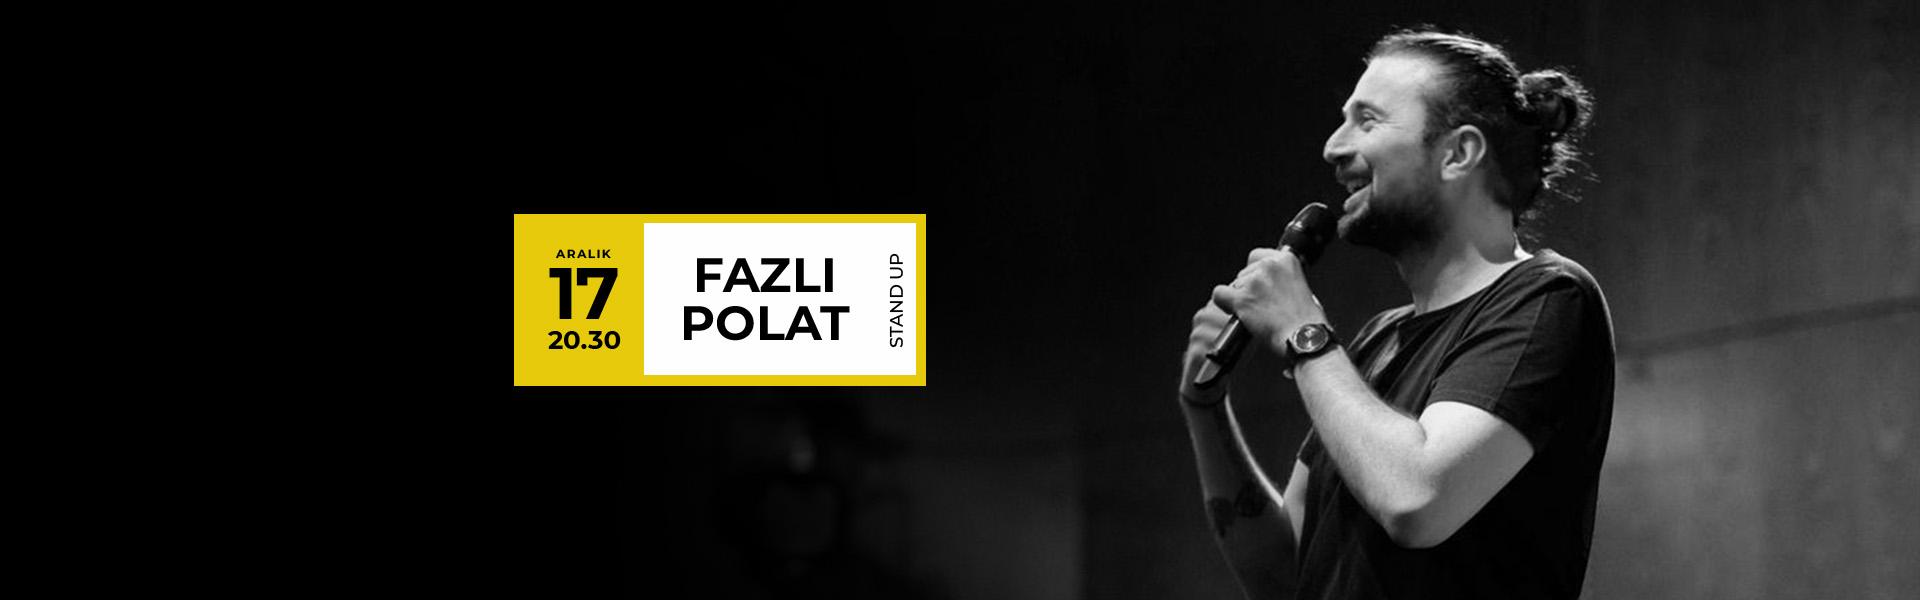 Fazlı Polat, Stand Up gösterisi ile 17 Aralık'da Podyum Sanat Mahal'de!